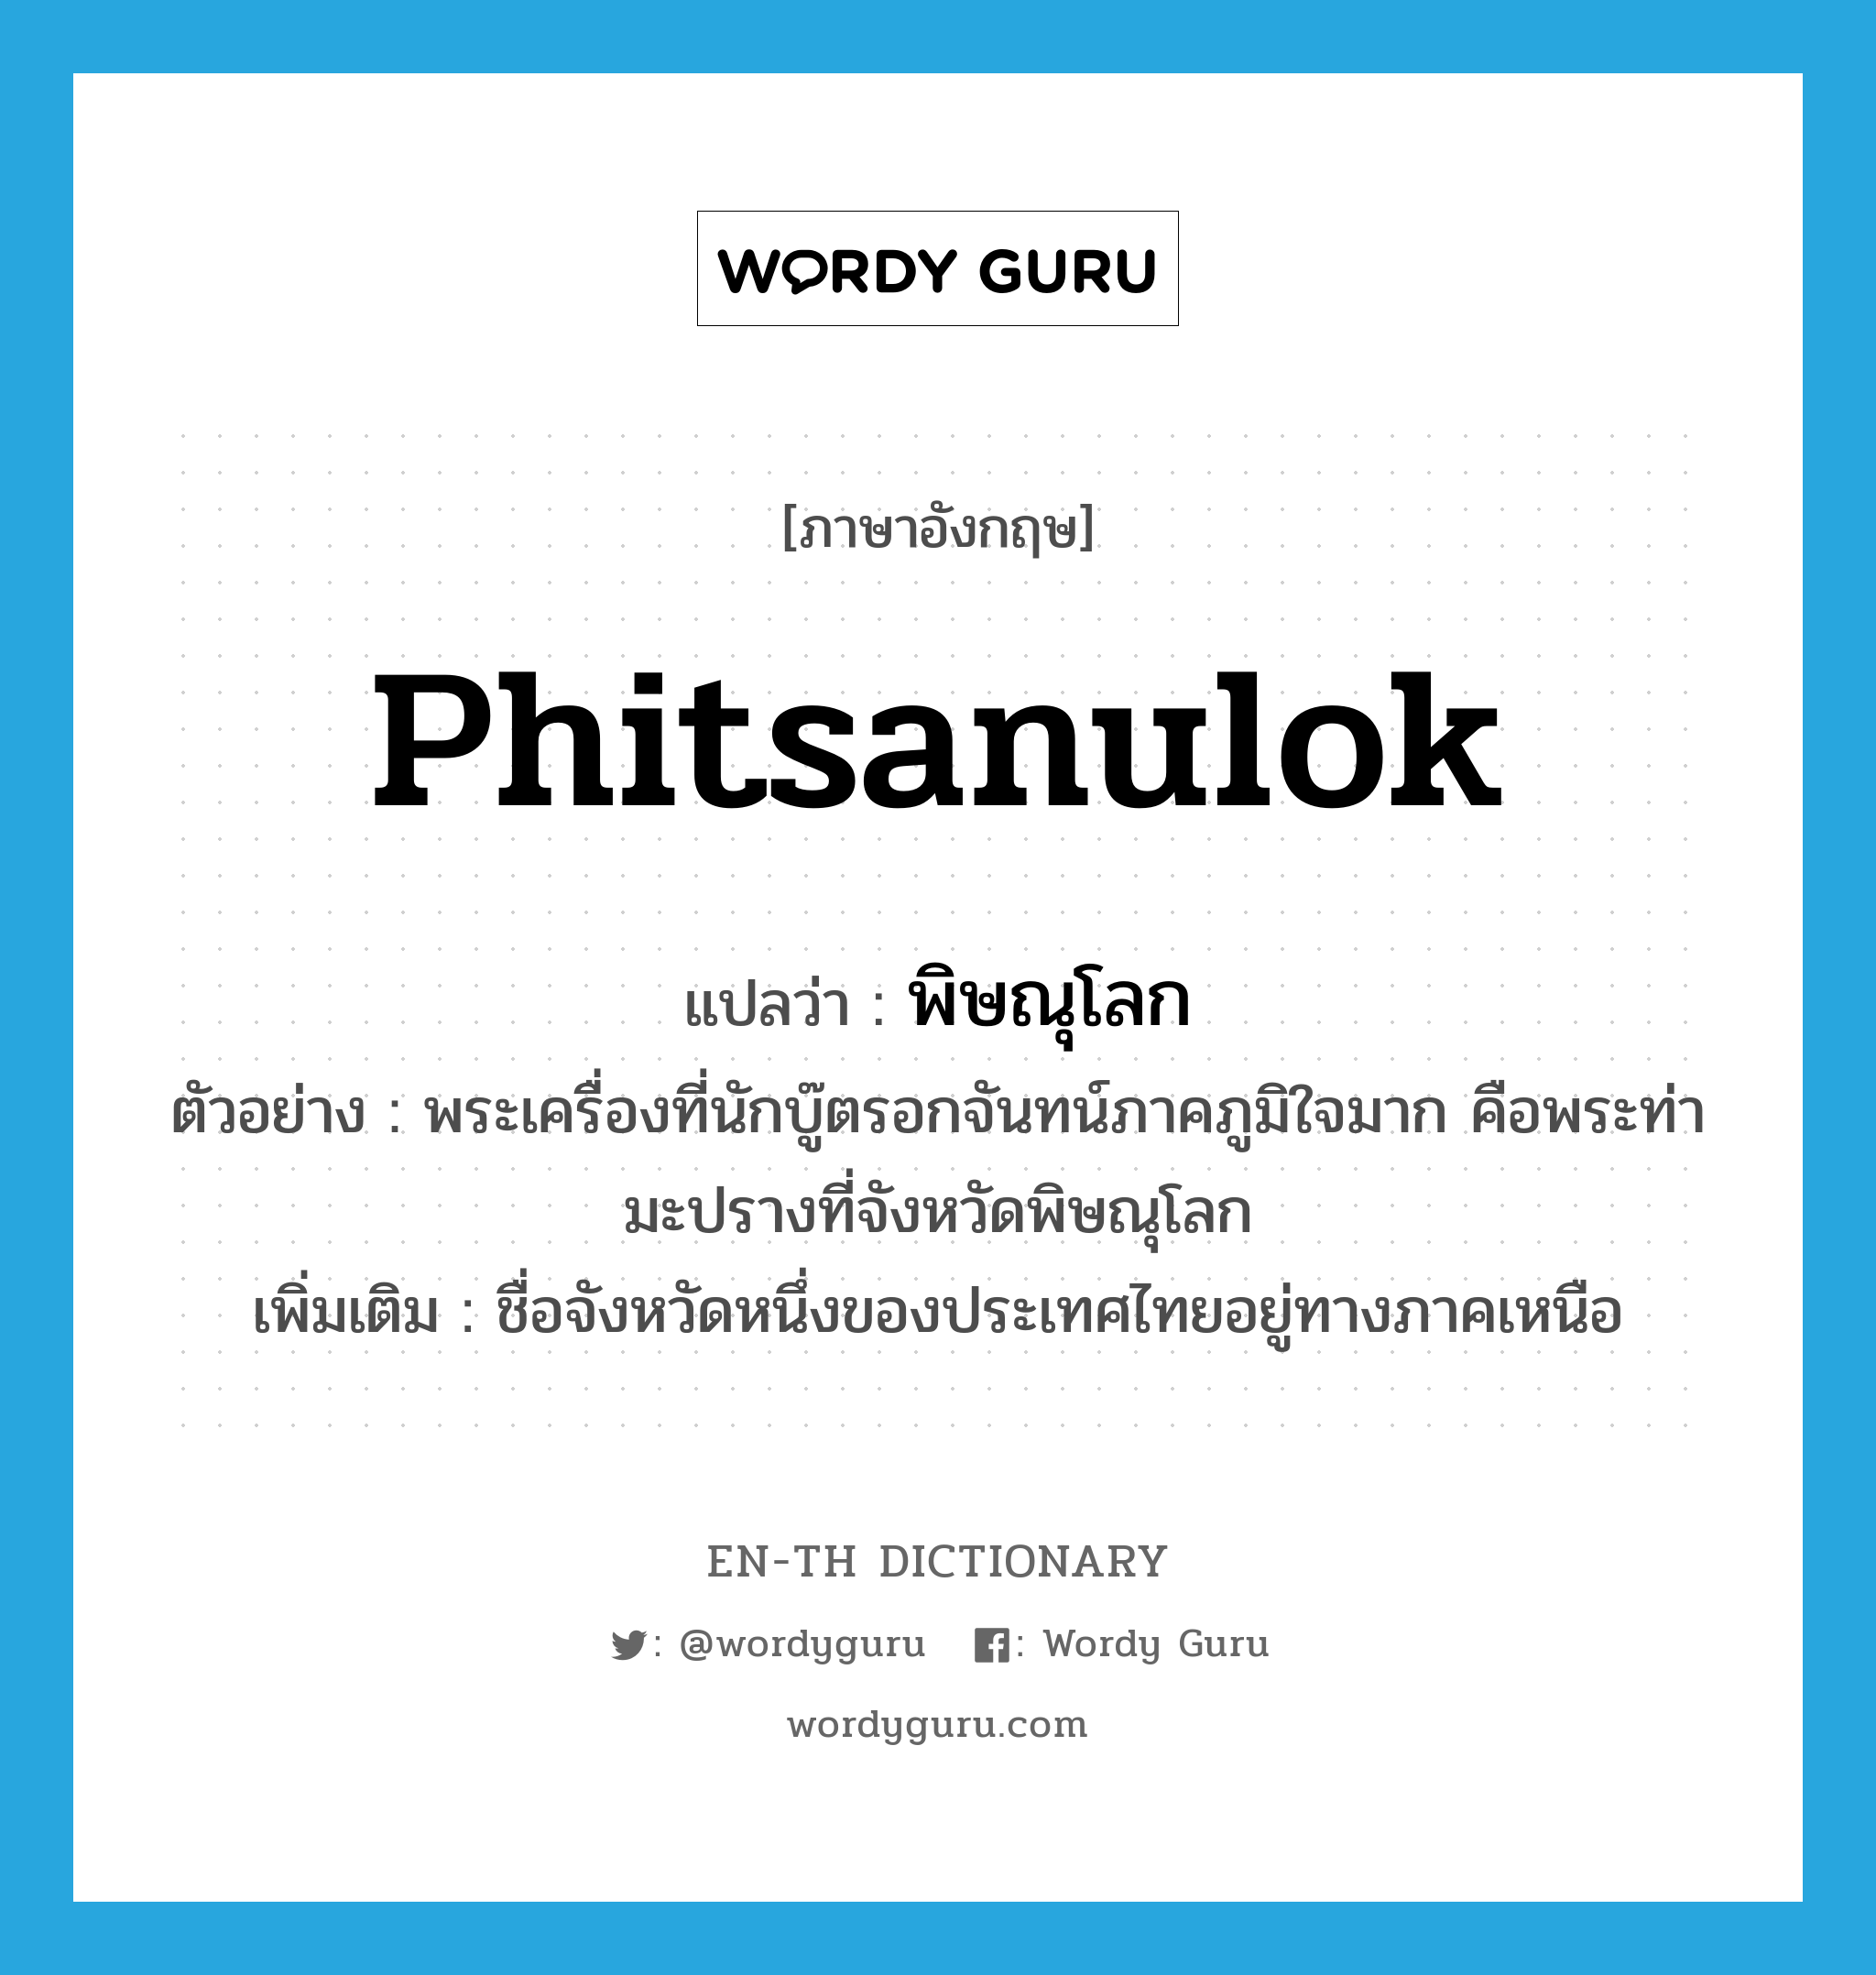 พิษณุโลก ภาษาอังกฤษ?, คำศัพท์ภาษาอังกฤษ พิษณุโลก แปลว่า Phitsanulok ประเภท N ตัวอย่าง พระเครื่องที่นักบู๊ตรอกจันทน์ภาคภูมิใจมาก คือพระท่ามะปรางที่จังหวัดพิษณุโลก เพิ่มเติม ชื่อจังหวัดหนึ่งของประเทศไทยอยู่ทางภาคเหนือ หมวด N